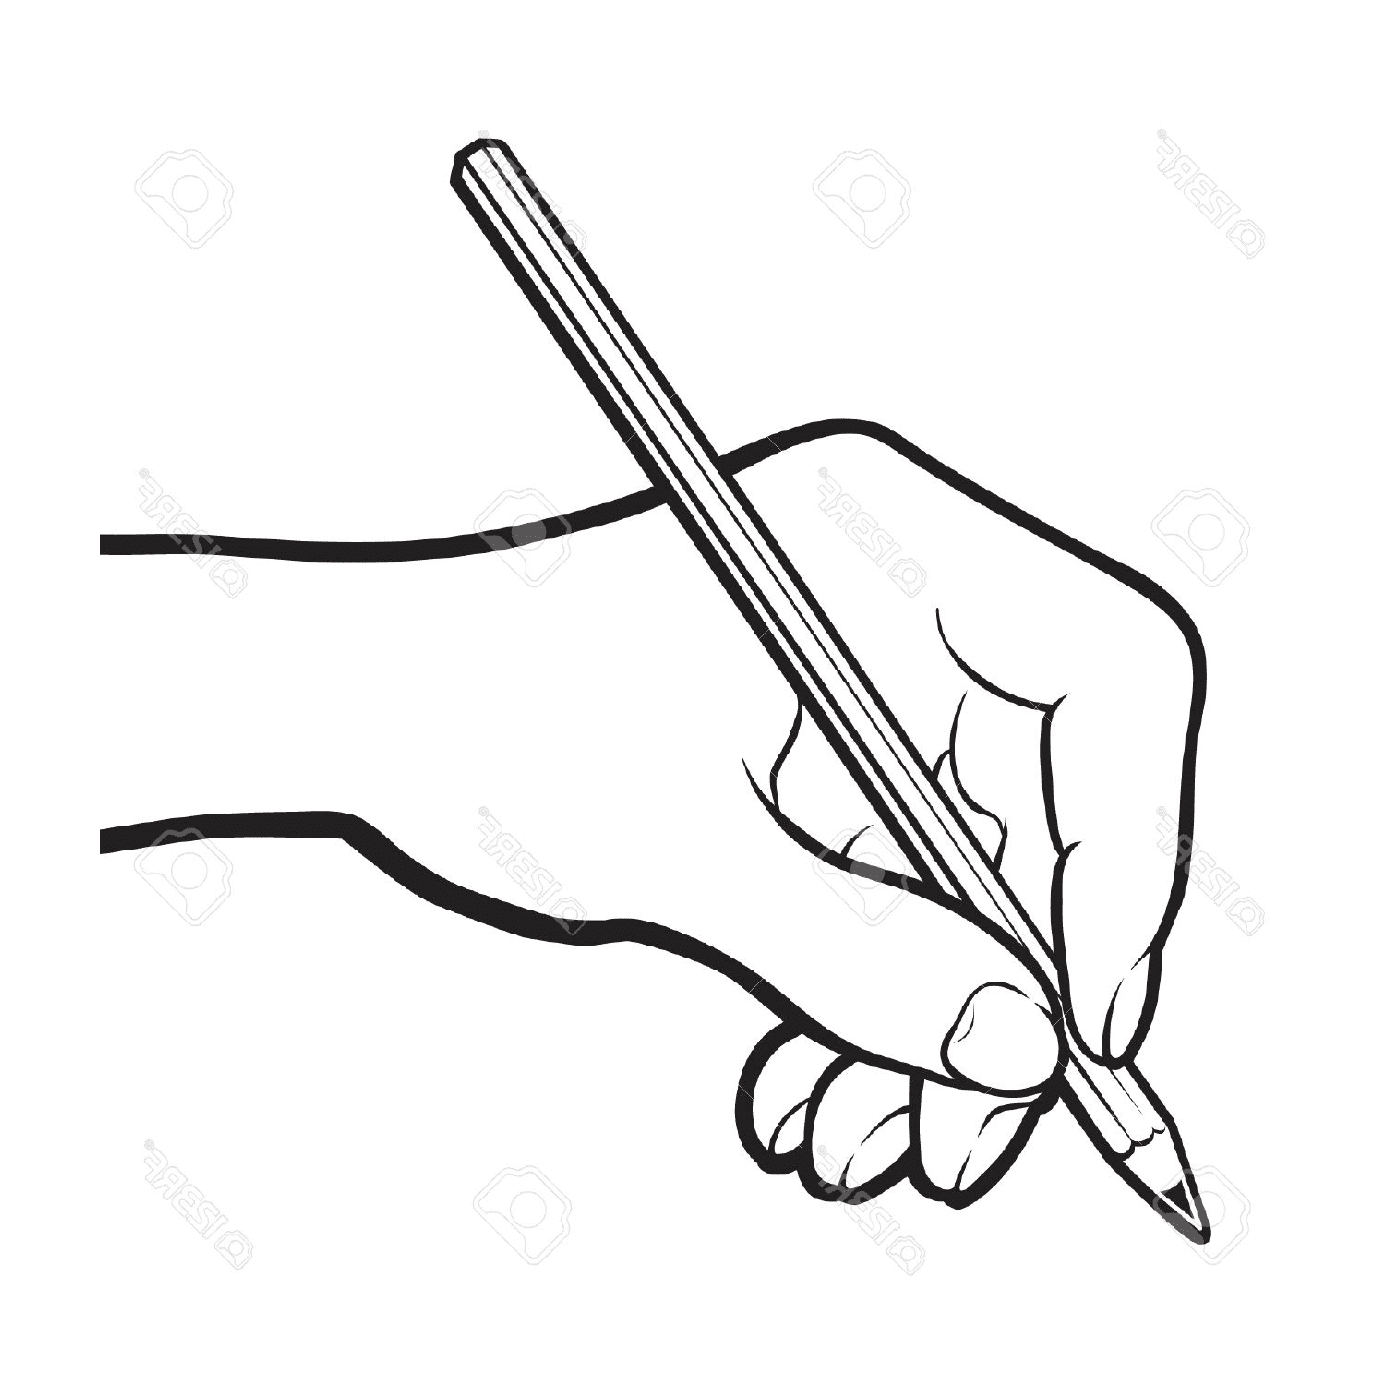  рисунок карандаша с рукояткой 